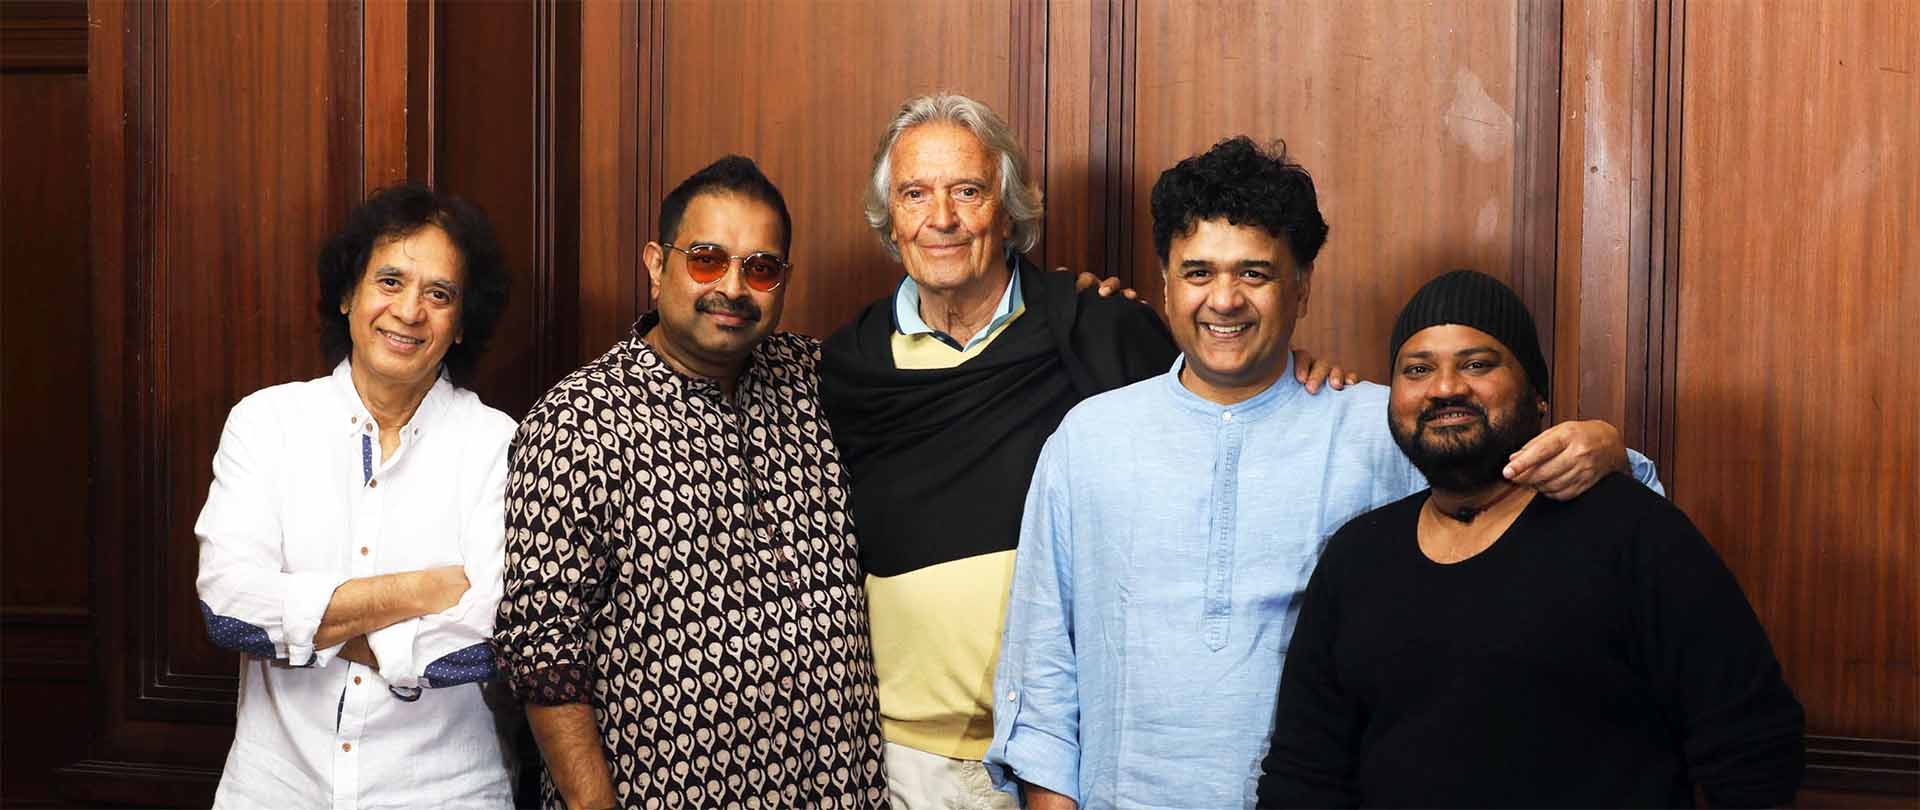 The members of Shakti: John McLaughlin, Zakir Hussain, Shankar Mahadevan 